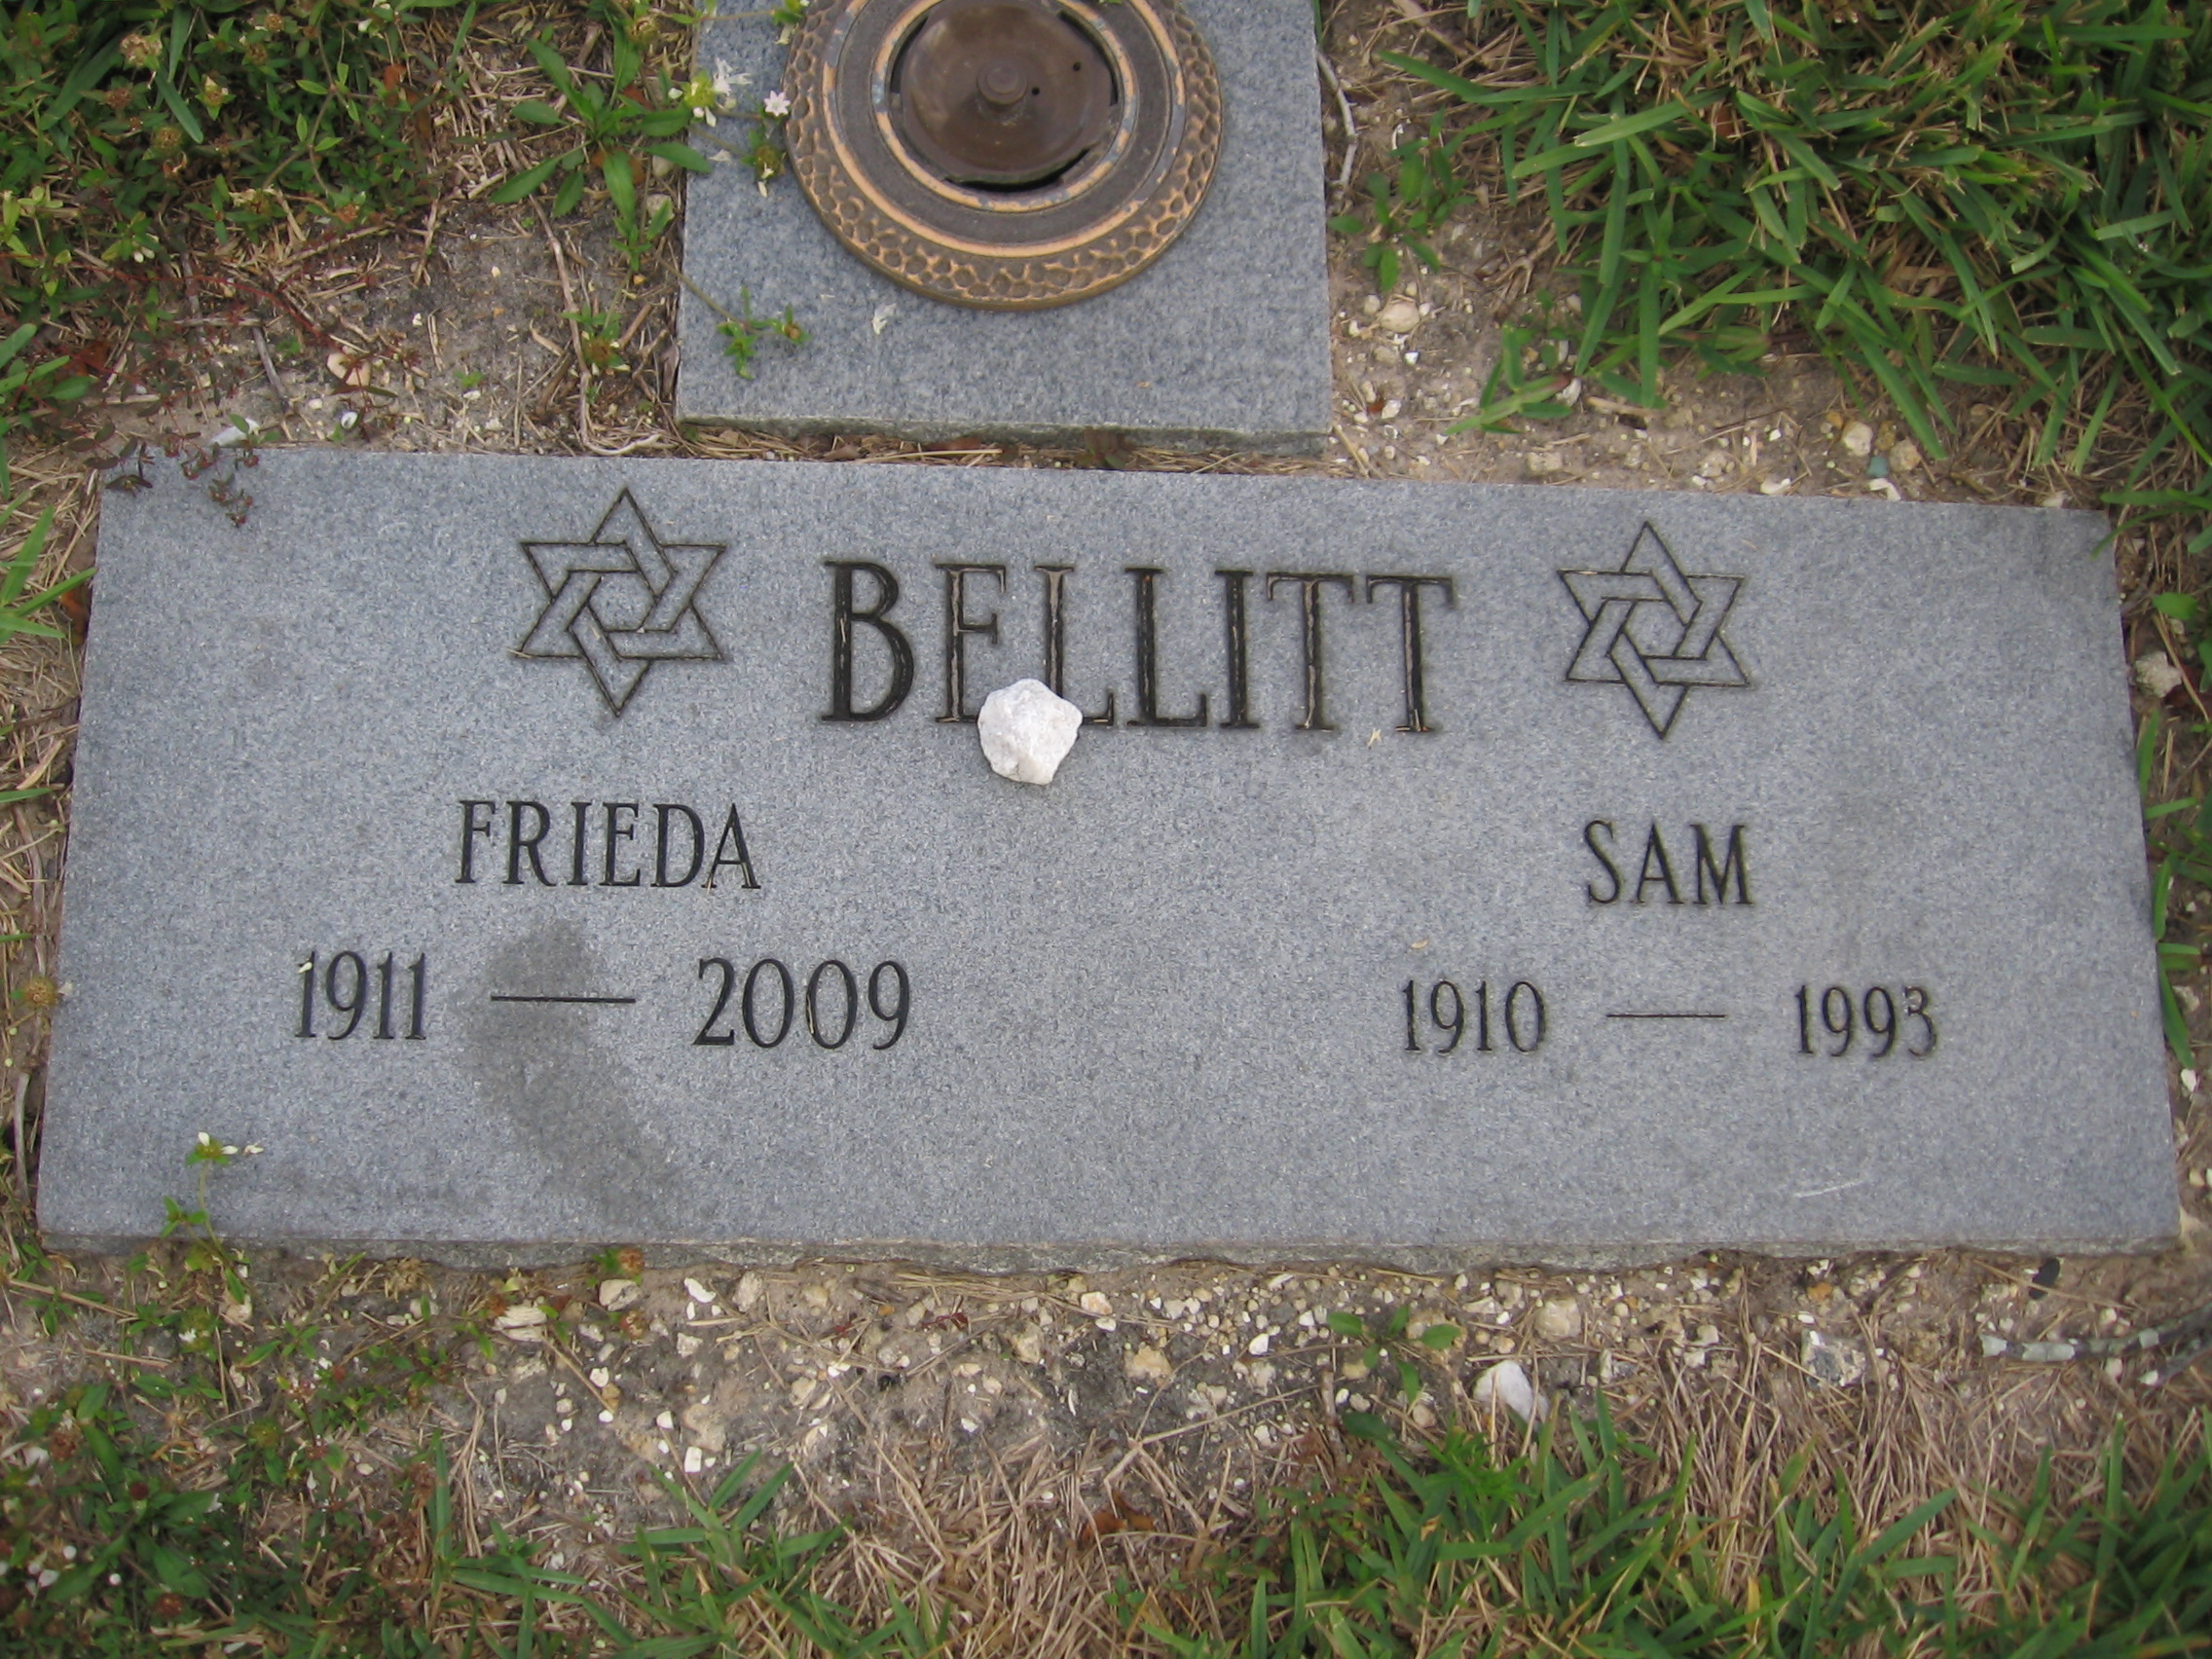 Frieda Bellitt